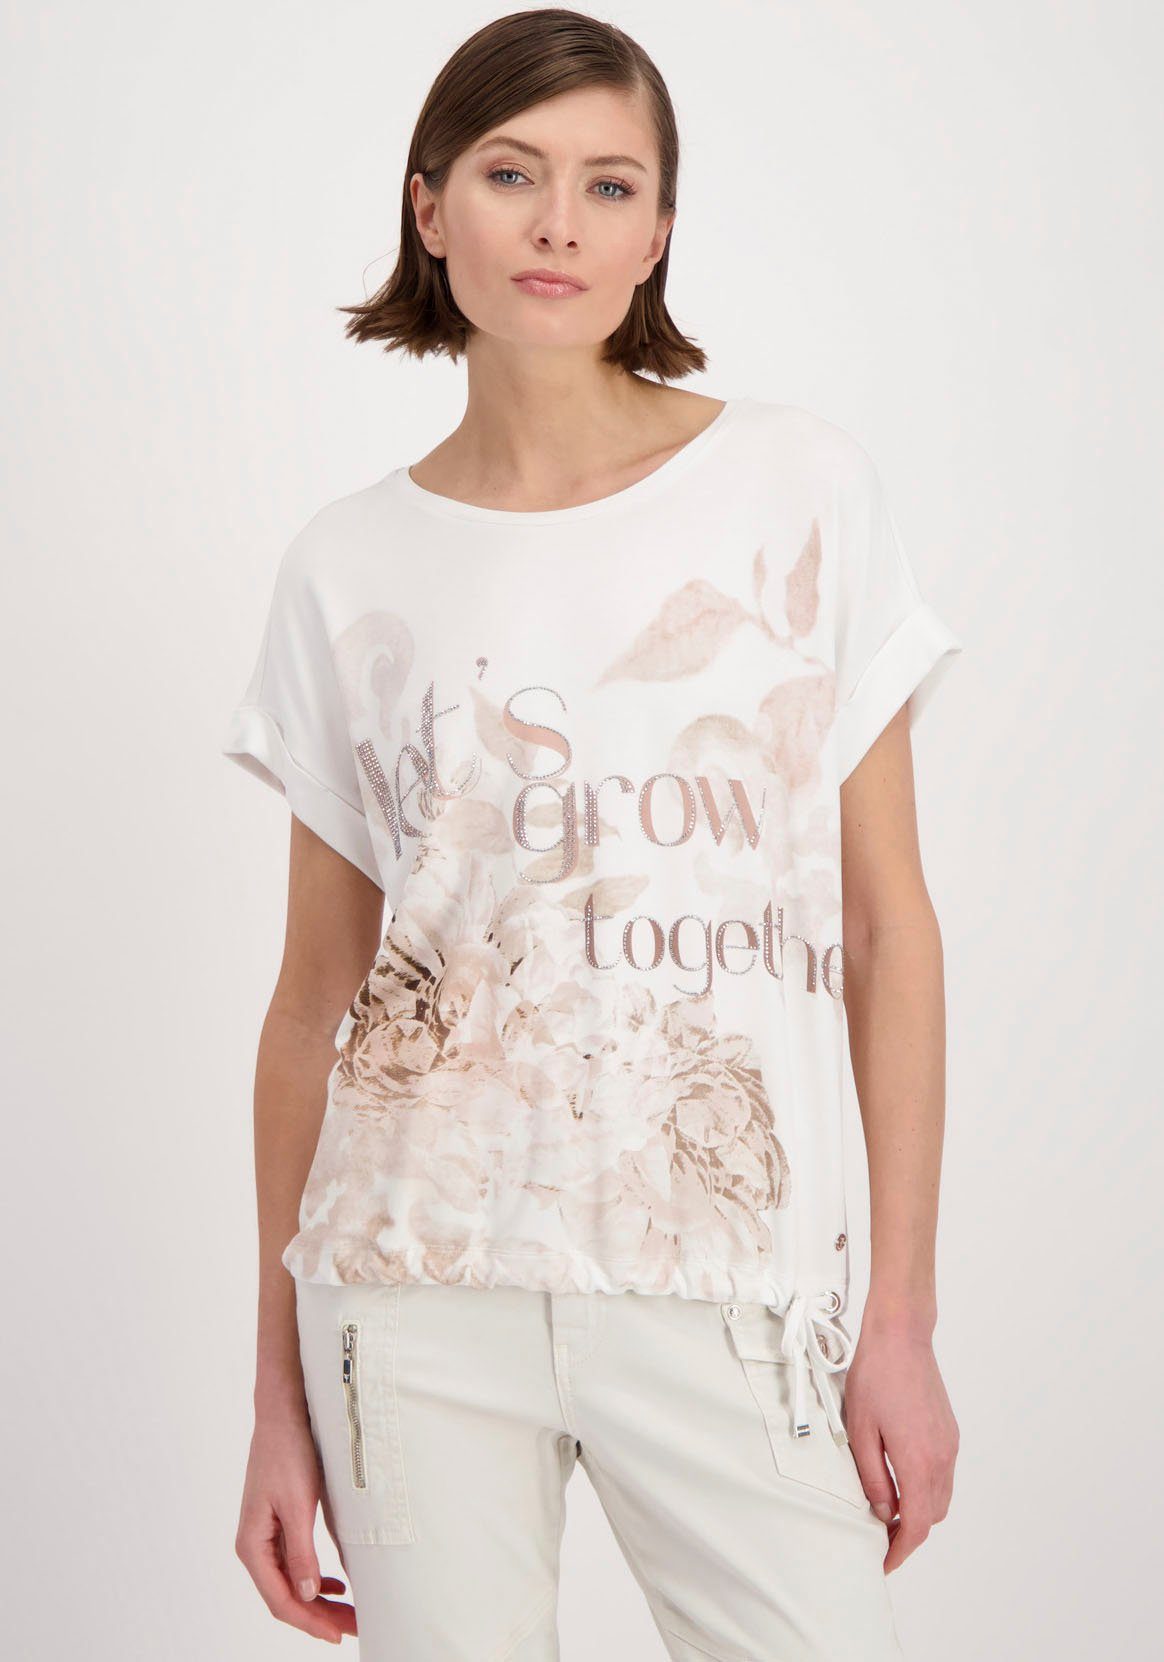 Monari Rundhalsshirt mit Monari Schriftzug von Blumendruck Feminines Alloverprint, und mit Shirt